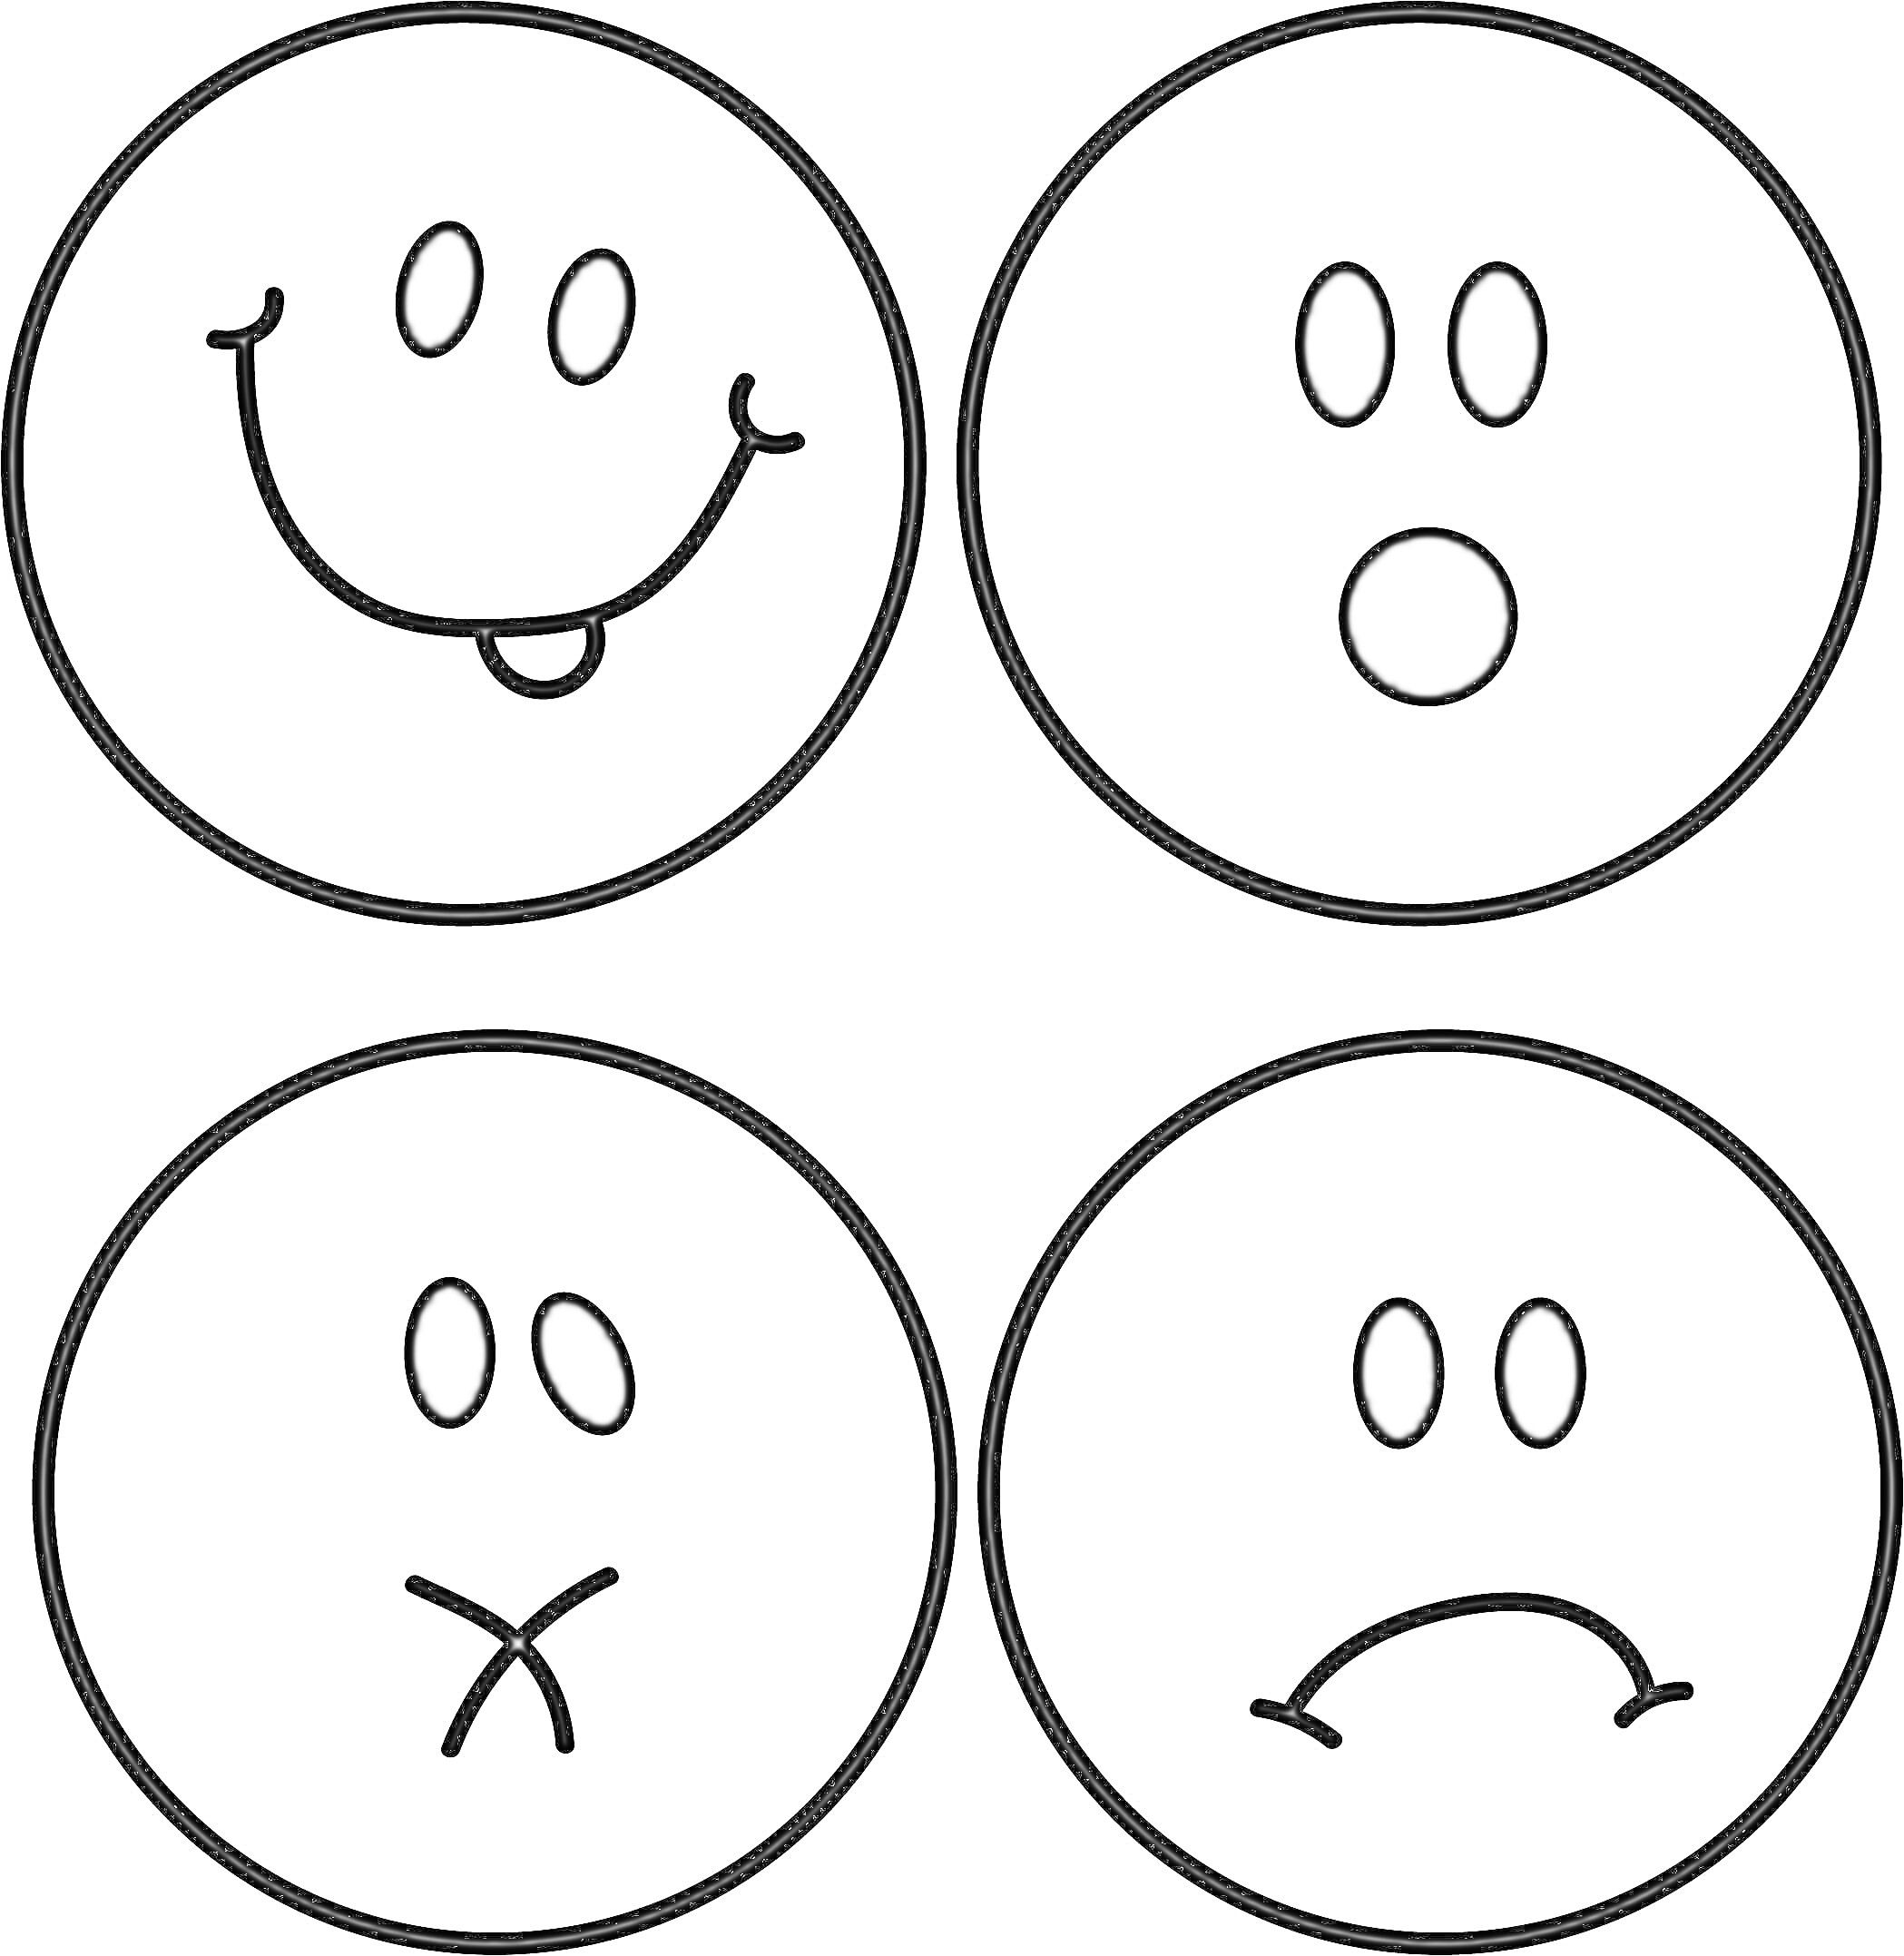 Раскраска Четыре смайлика с разными выражениями лиц: весёлый смайлик с высунутым языком, удивленный смайлик, хмурый смайлик с закрытым ртом, печальный смайлик.